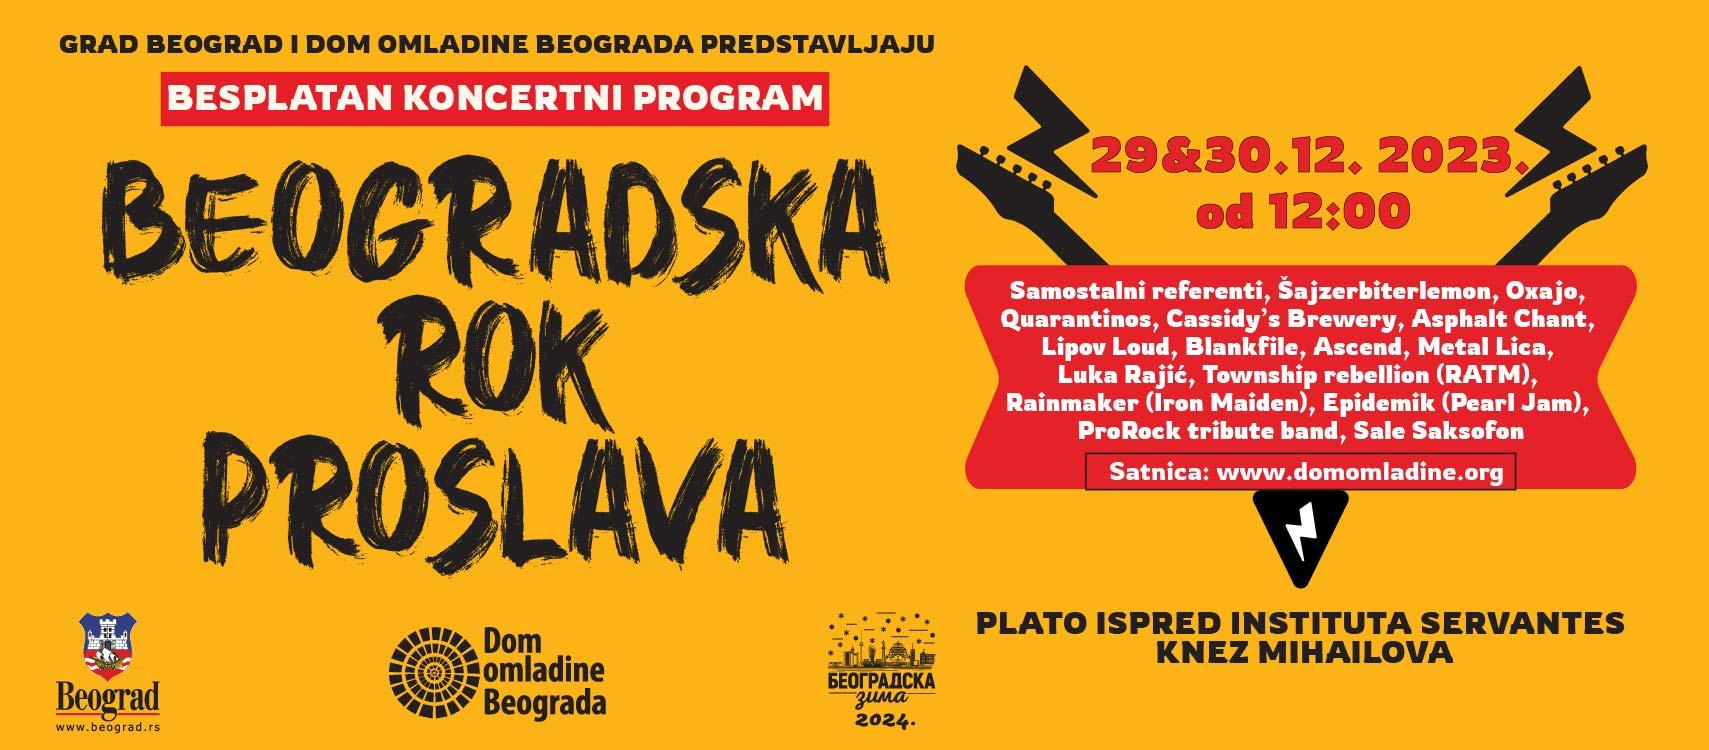 Slika za Beogradska rok proslava